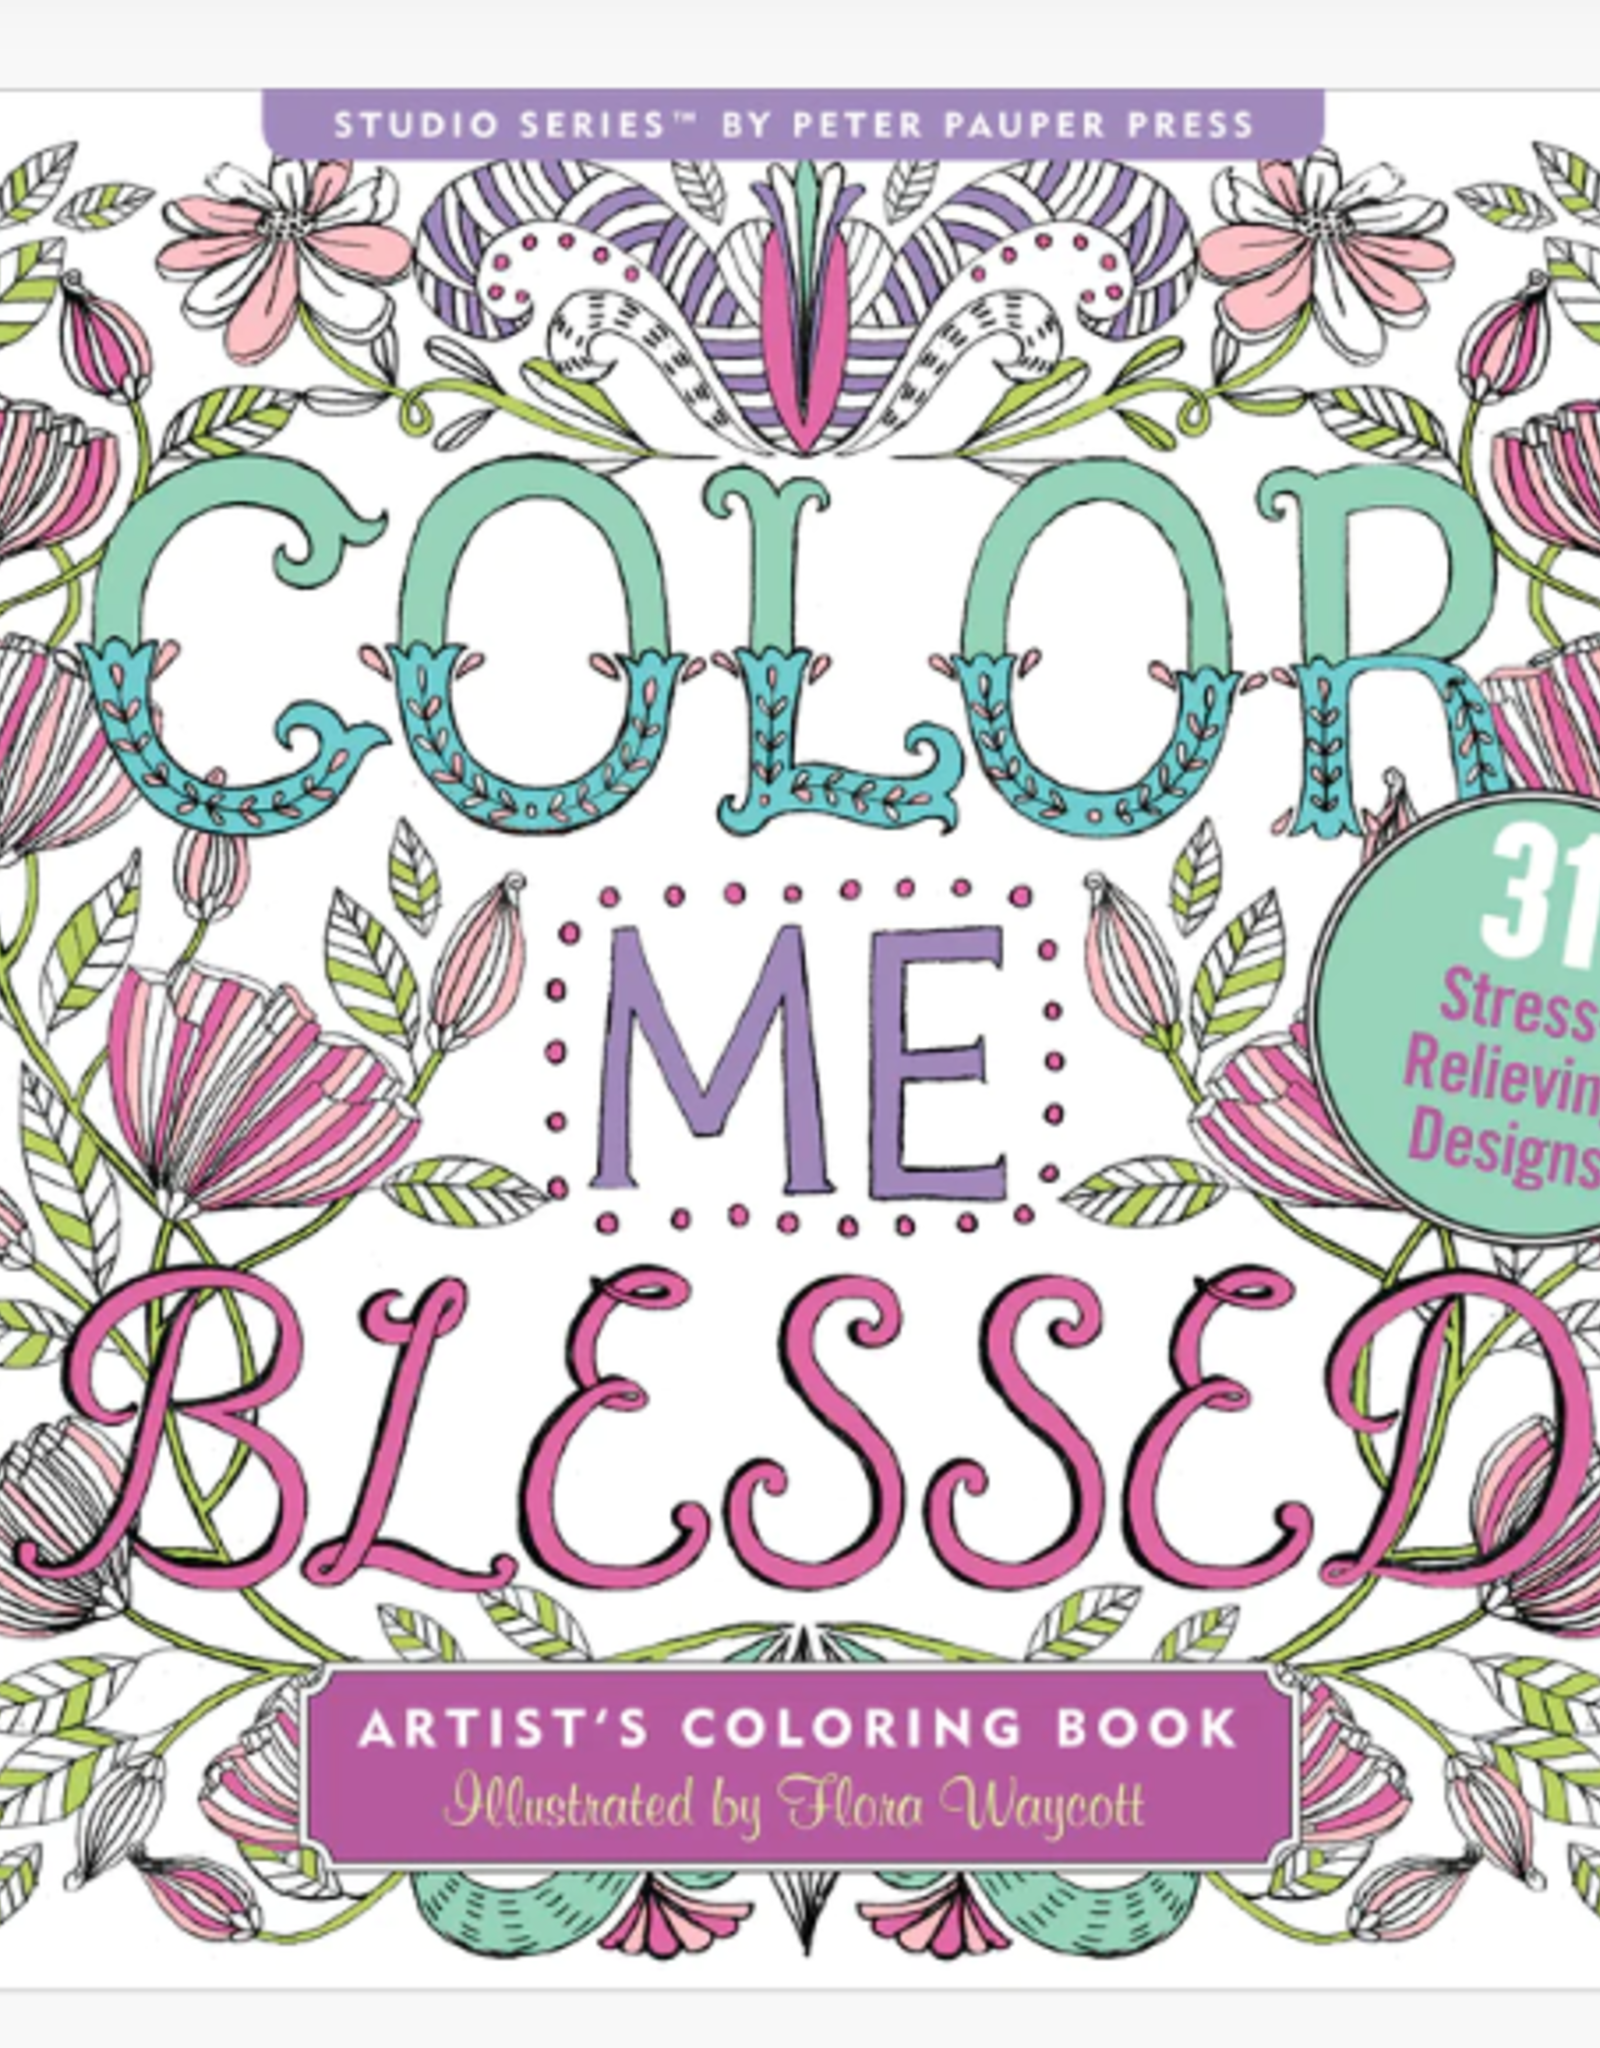 Peter Pauper Press Colour Book Zen Color me Blessed